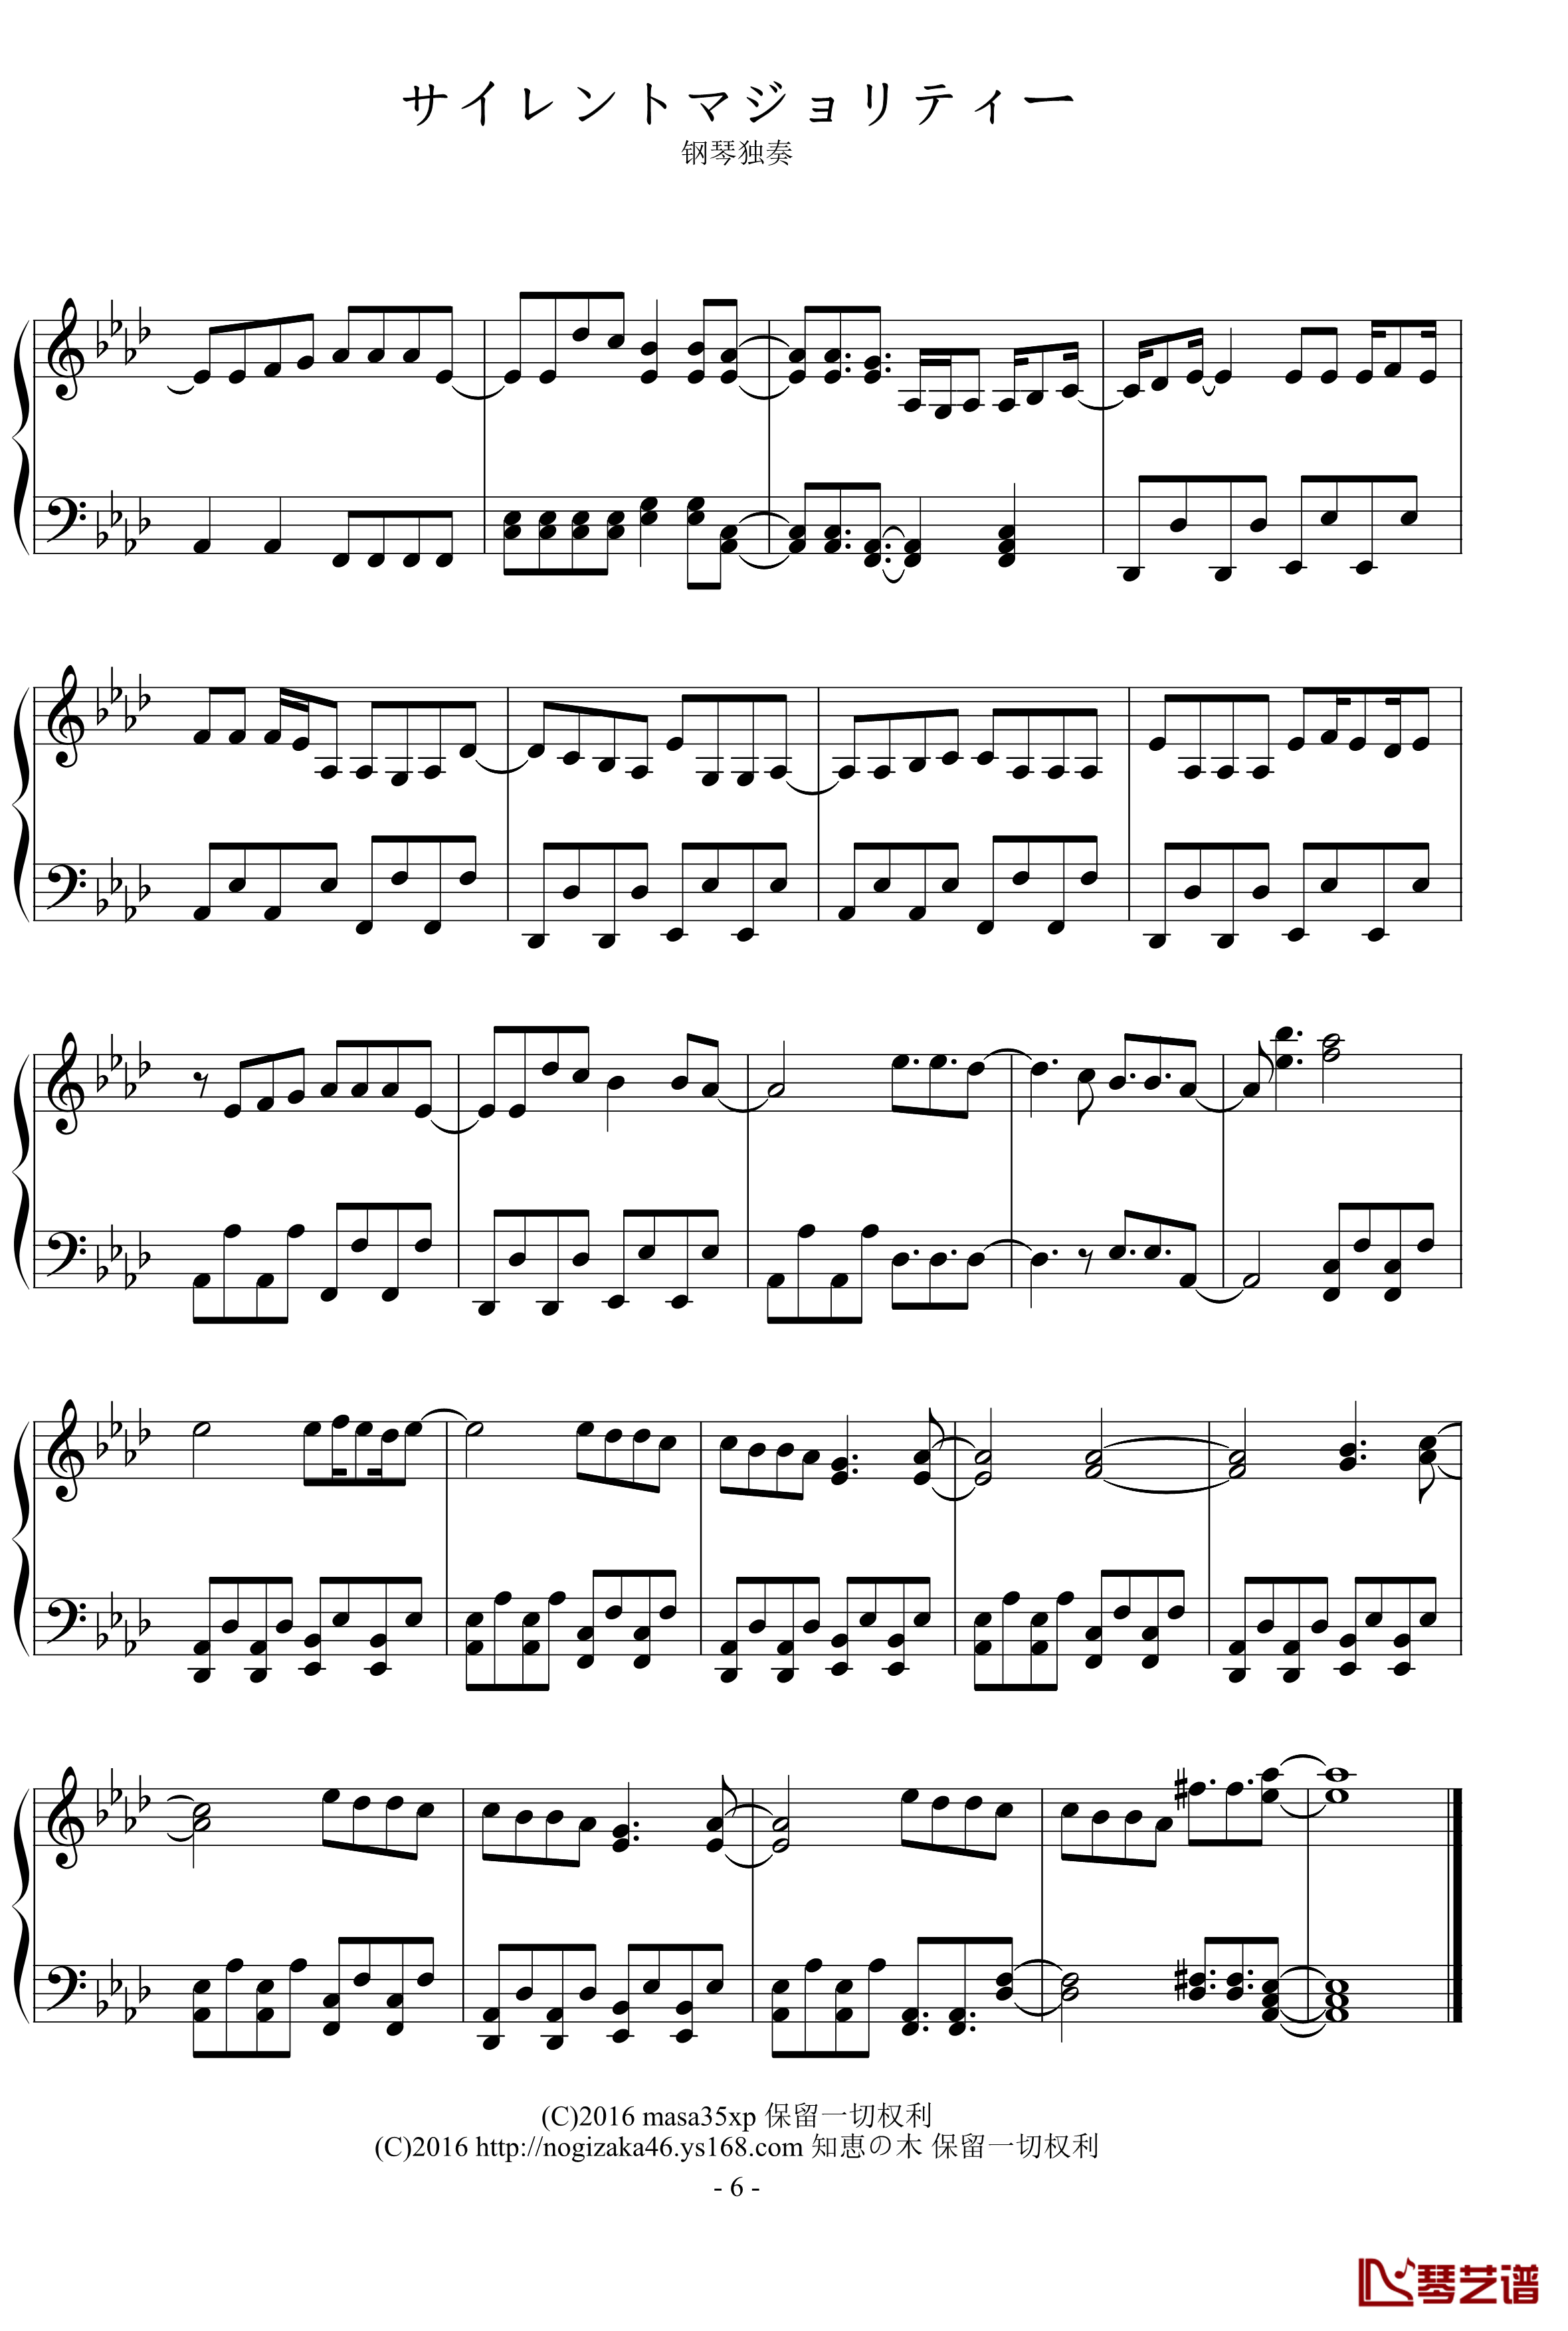 サイレントマジョリティー钢琴谱-欅坂46